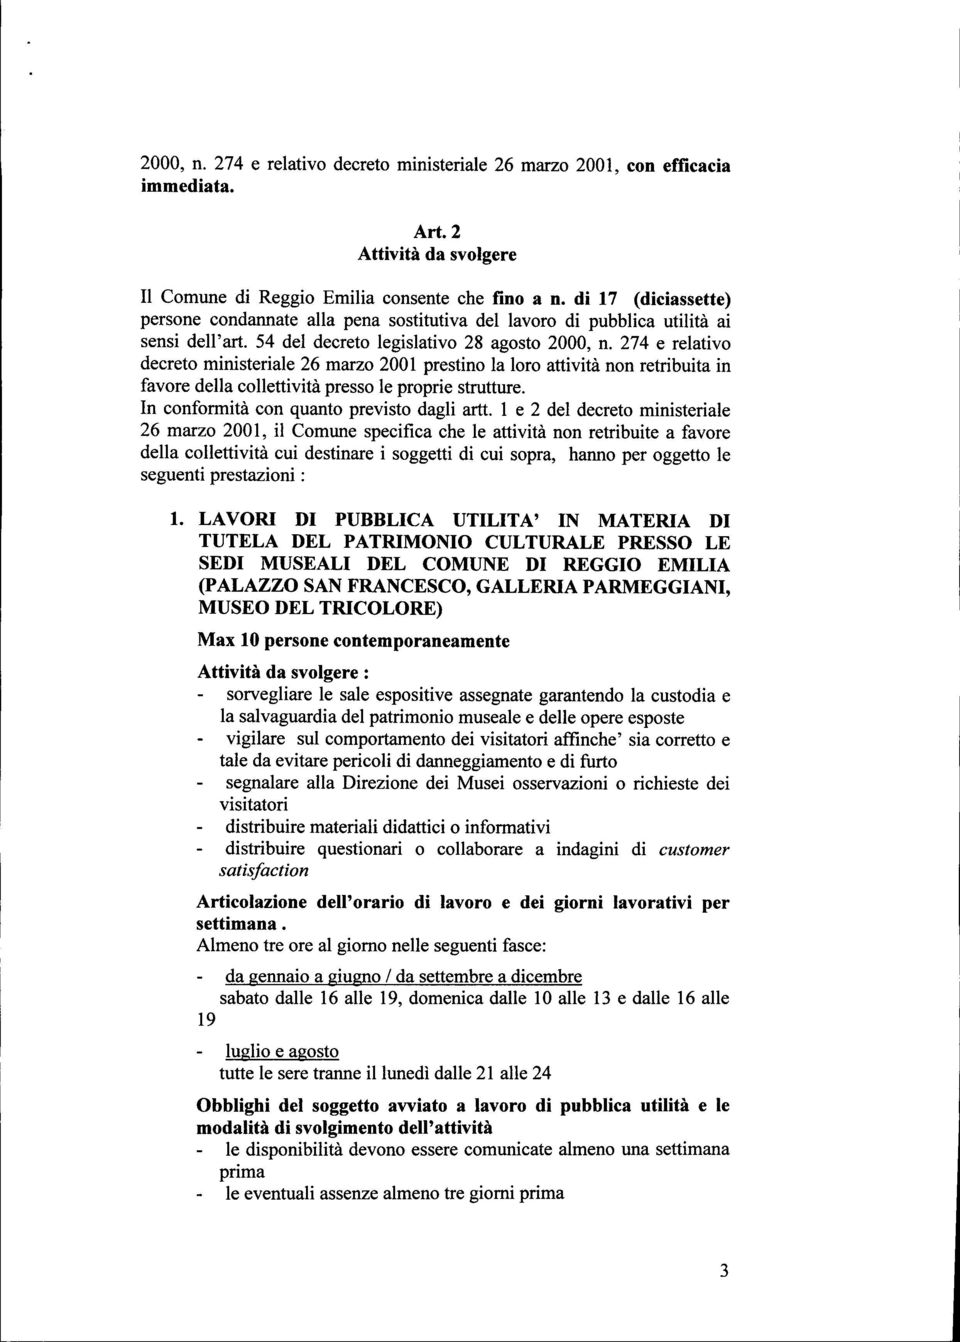 274 e relativo decreto ministeriale 26 marzo 2001 prestino la loro attività non retribuita in favore della collettività presso le proprie strutture. In conformità con quanto previsto dagli artt.